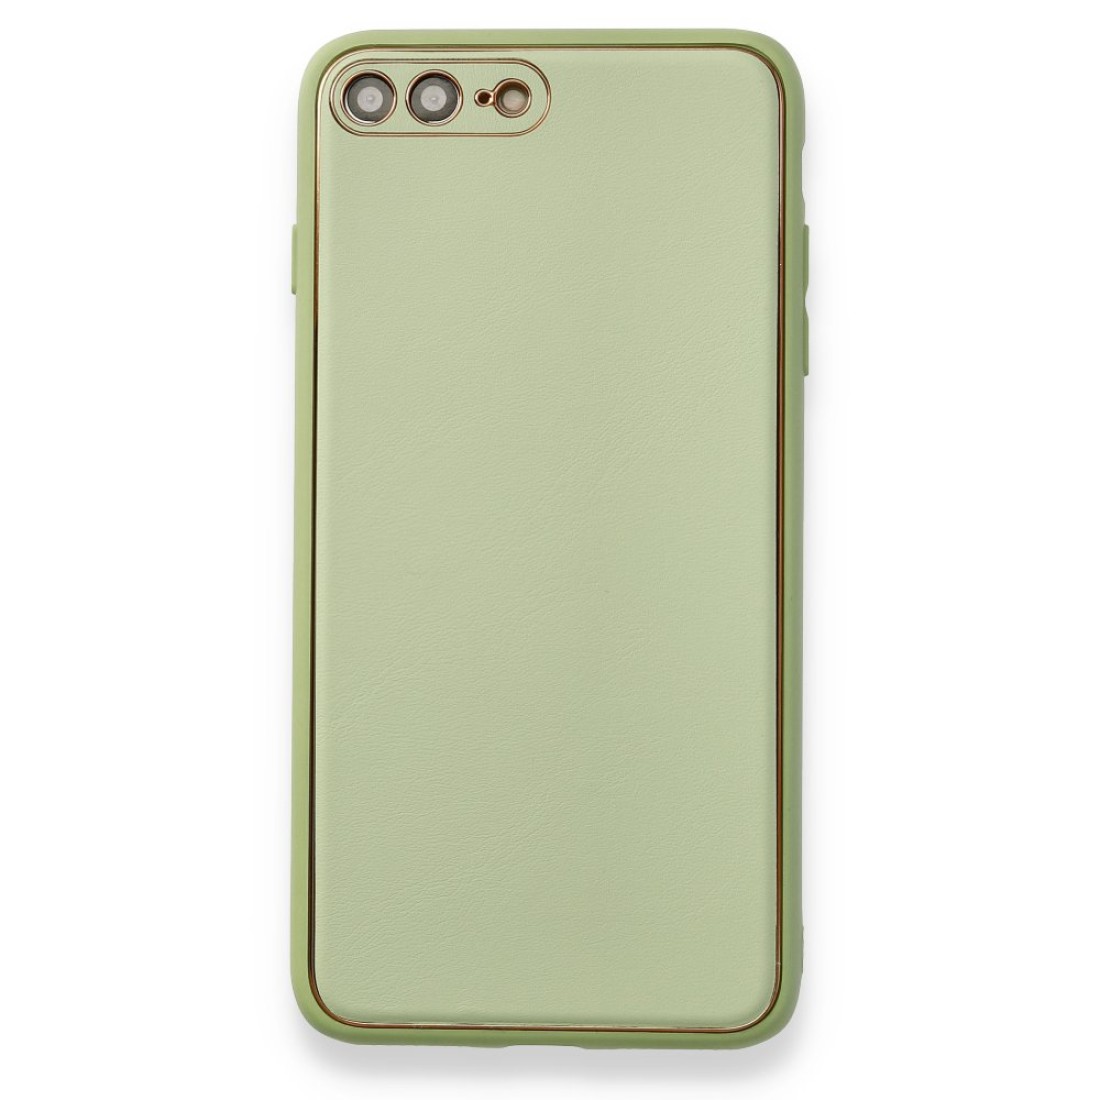 Apple iPhone 8 Plus Kılıf Coco Deri Silikon Kapak - Açık Yeşil